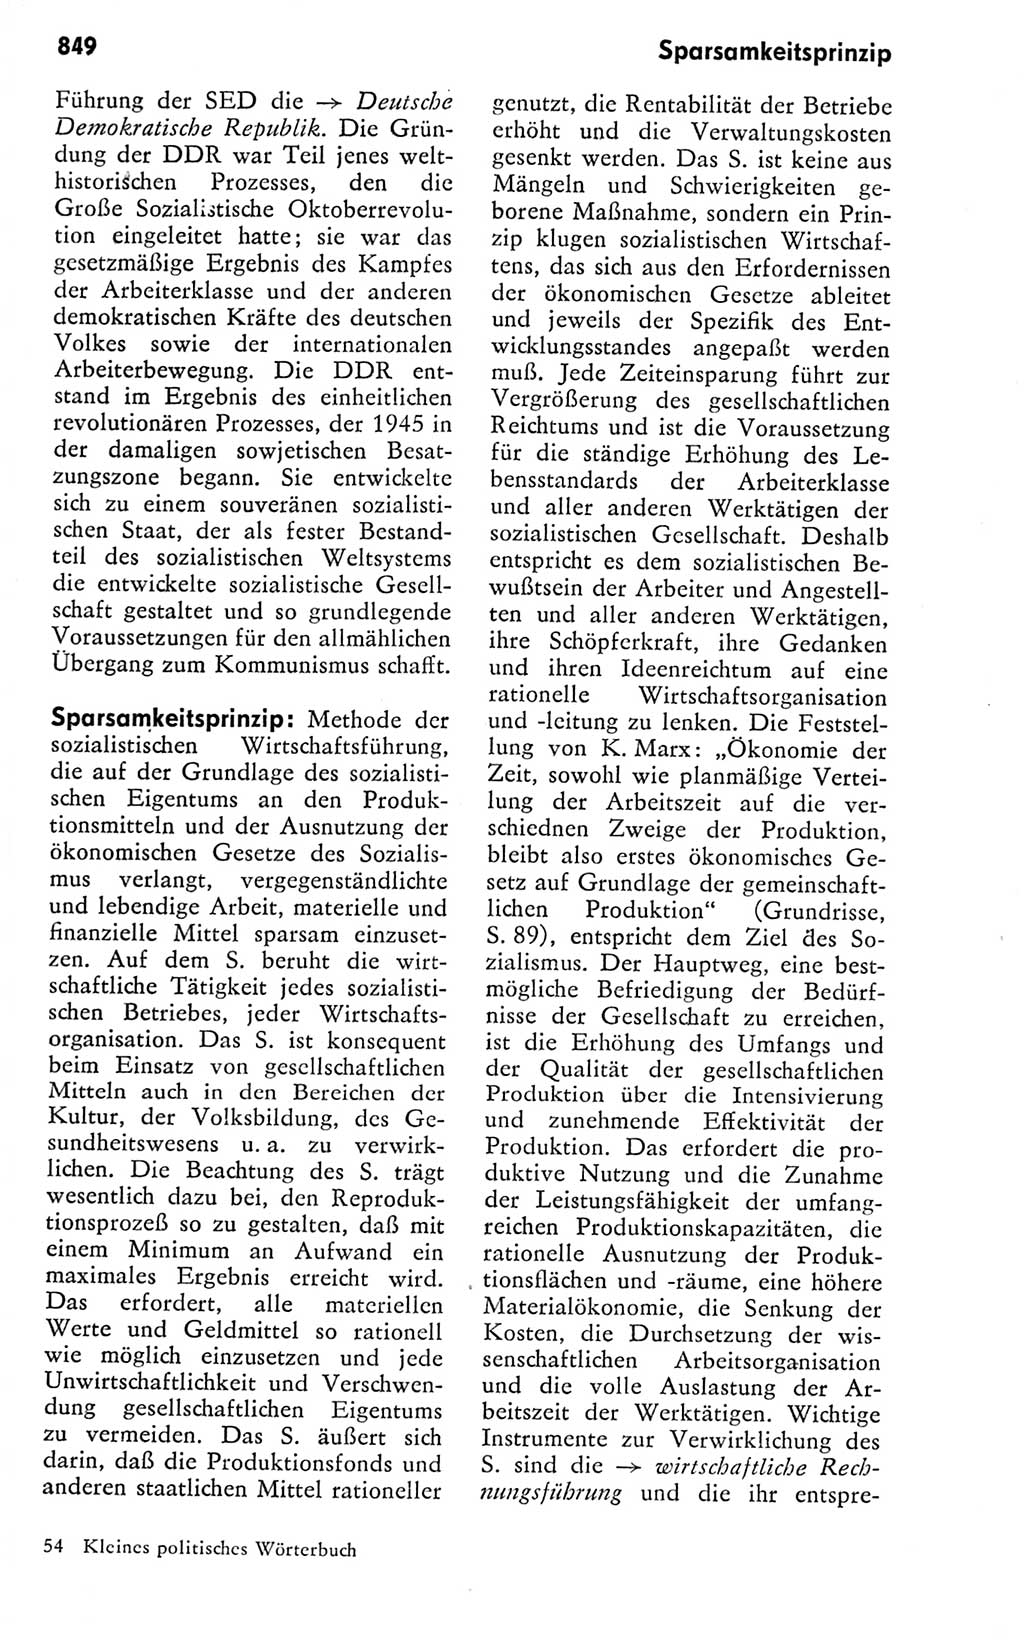 Kleines politisches Wörterbuch [Deutsche Demokratische Republik (DDR)] 1978, Seite 849 (Kl. pol. Wb. DDR 1978, S. 849)